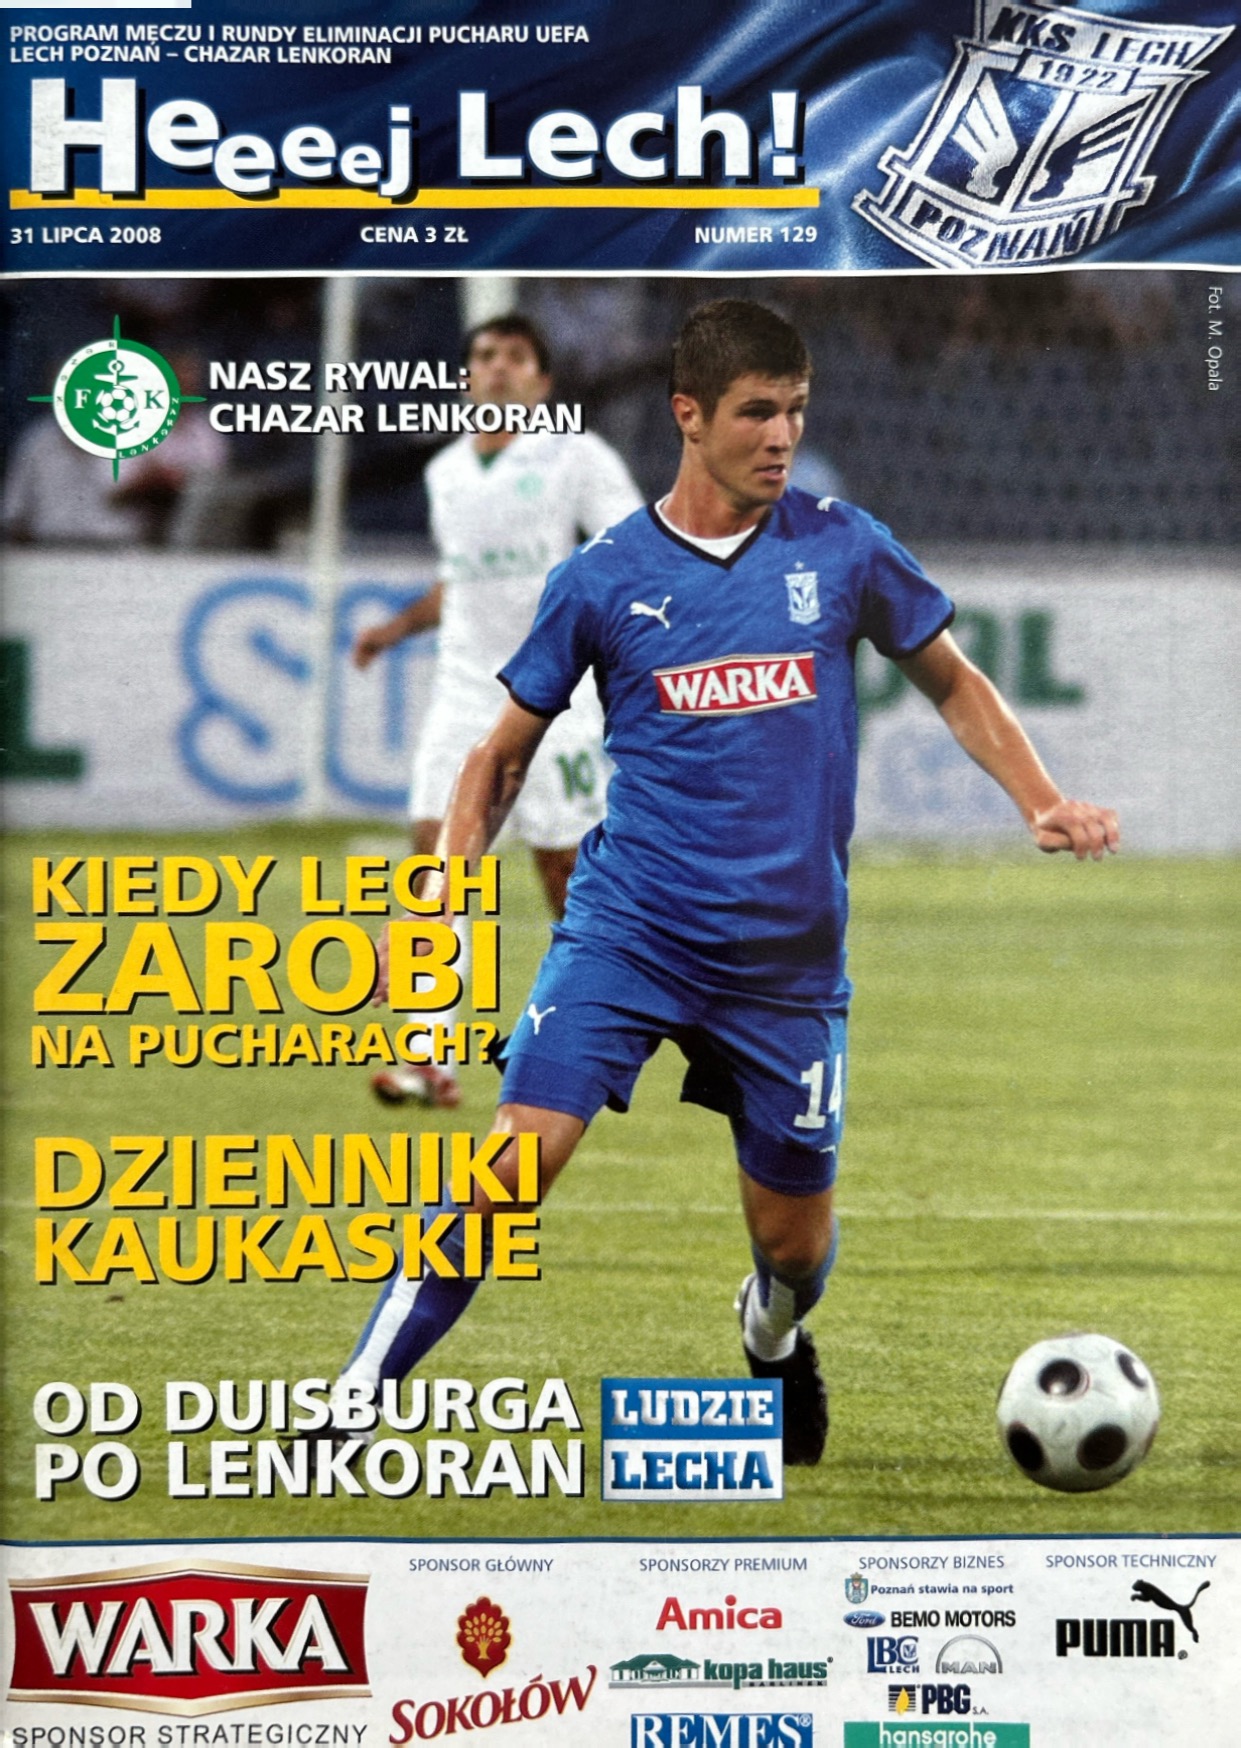 Program meczowy Lech Poznań - Xəzər Lenkoran 4:1 (31.07.2008)